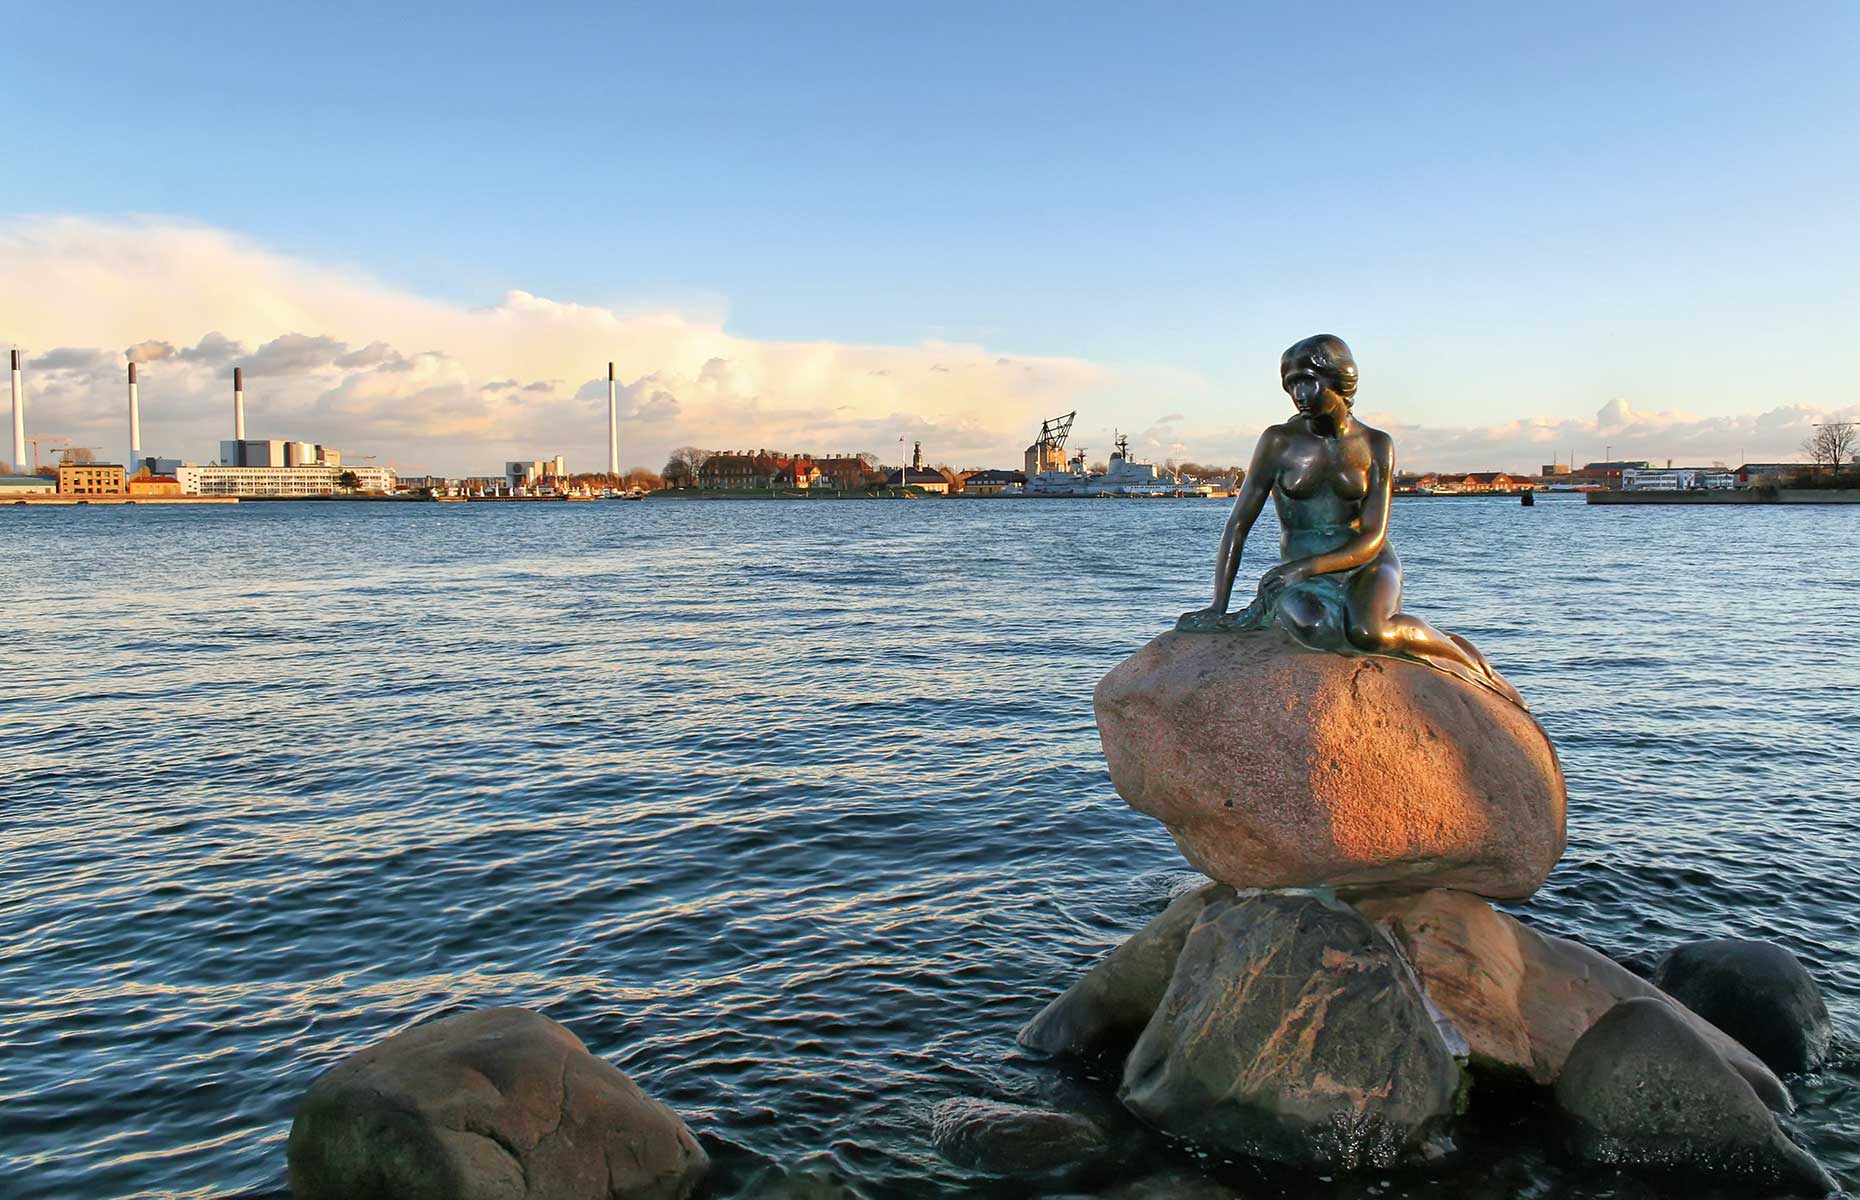 Little Mermaid, Copenhagen (Image: Ppictures/Shutterstock)